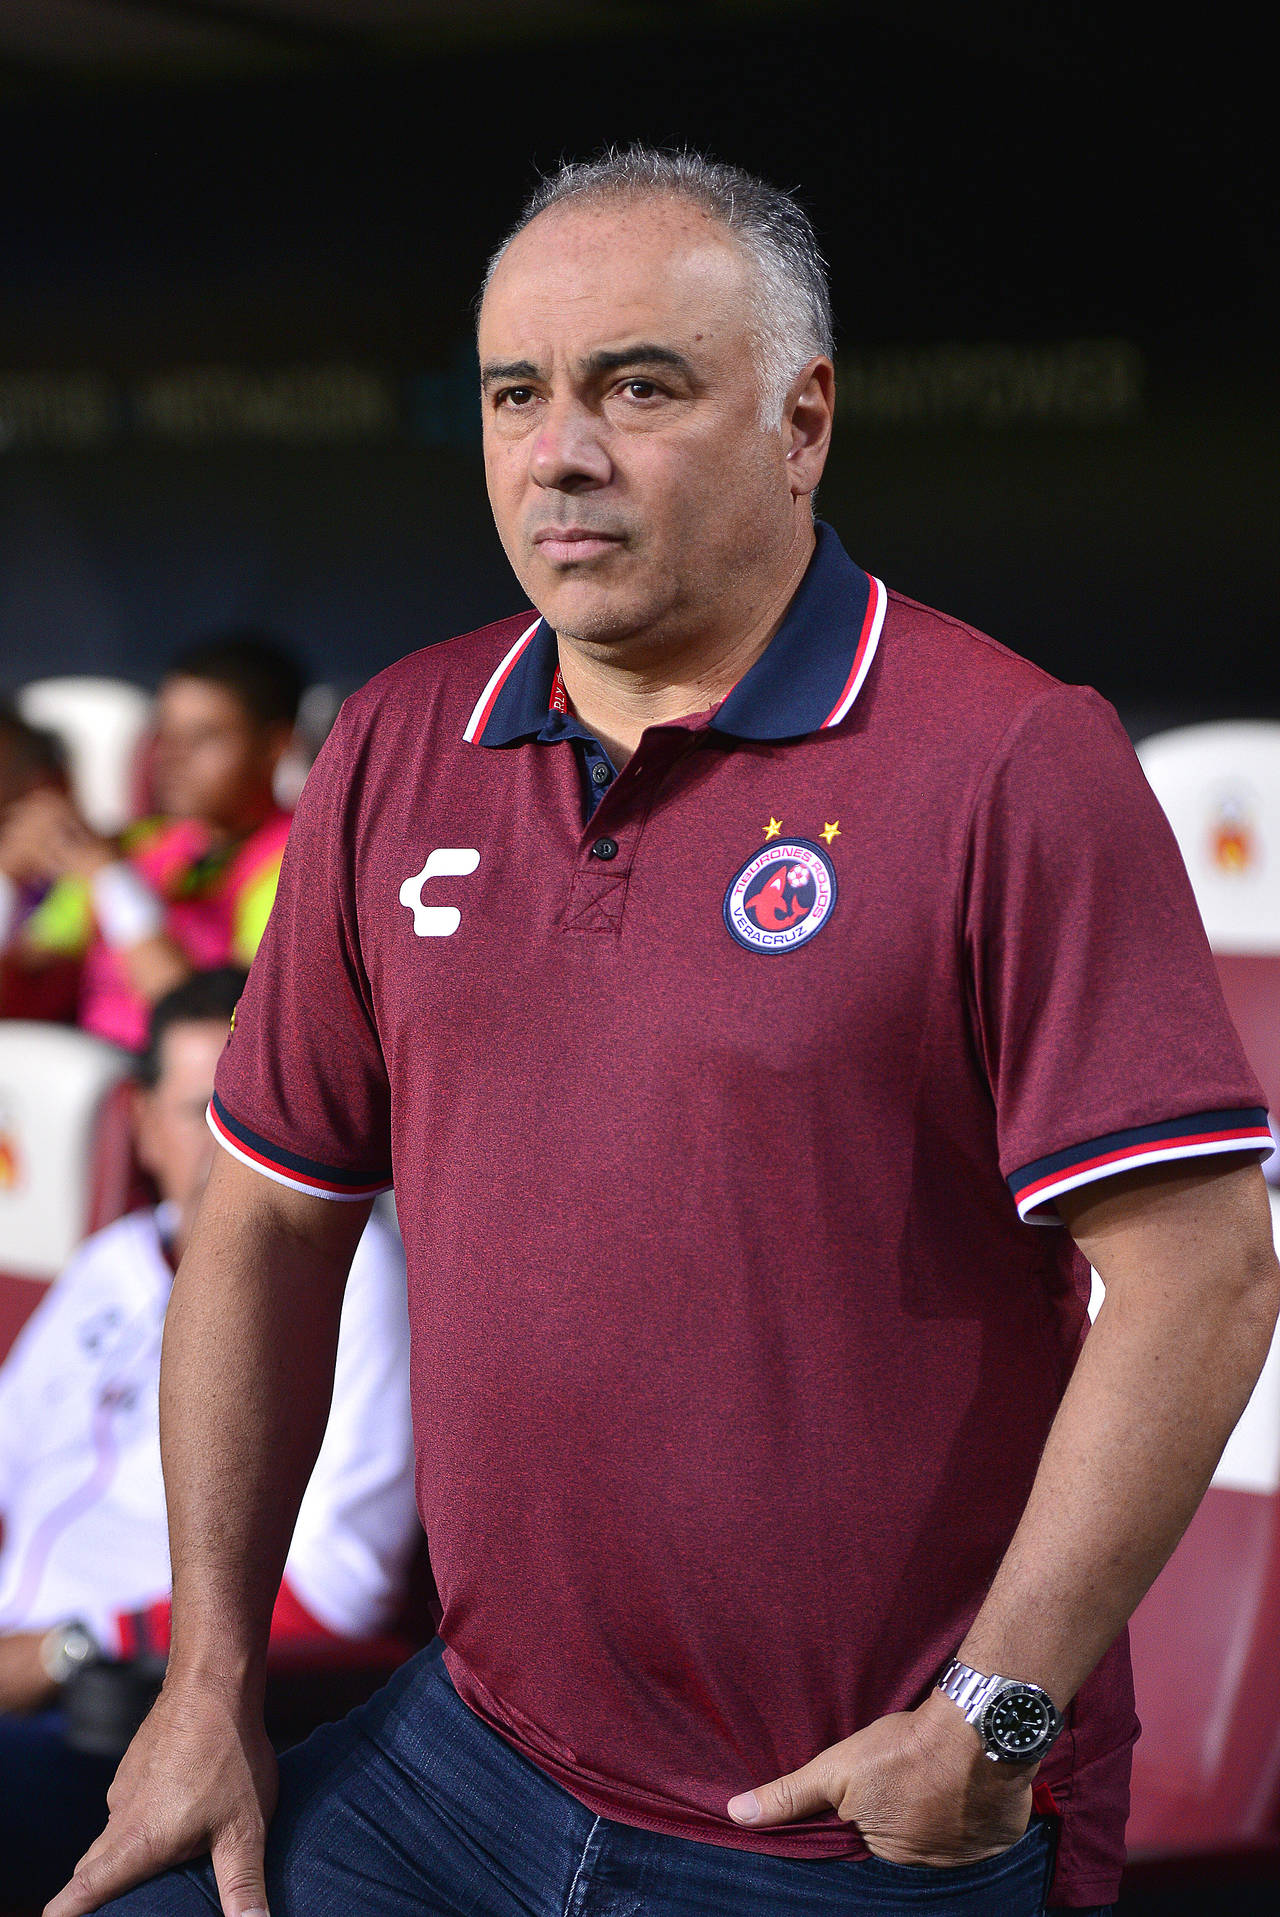 La directiva del equipo Tiburones Rojos del Veracruz confirmó la continuidad del técnico Guillermo Vázquez al frente del equipo. Continuará Memo Vázquez al frente del Veracruz